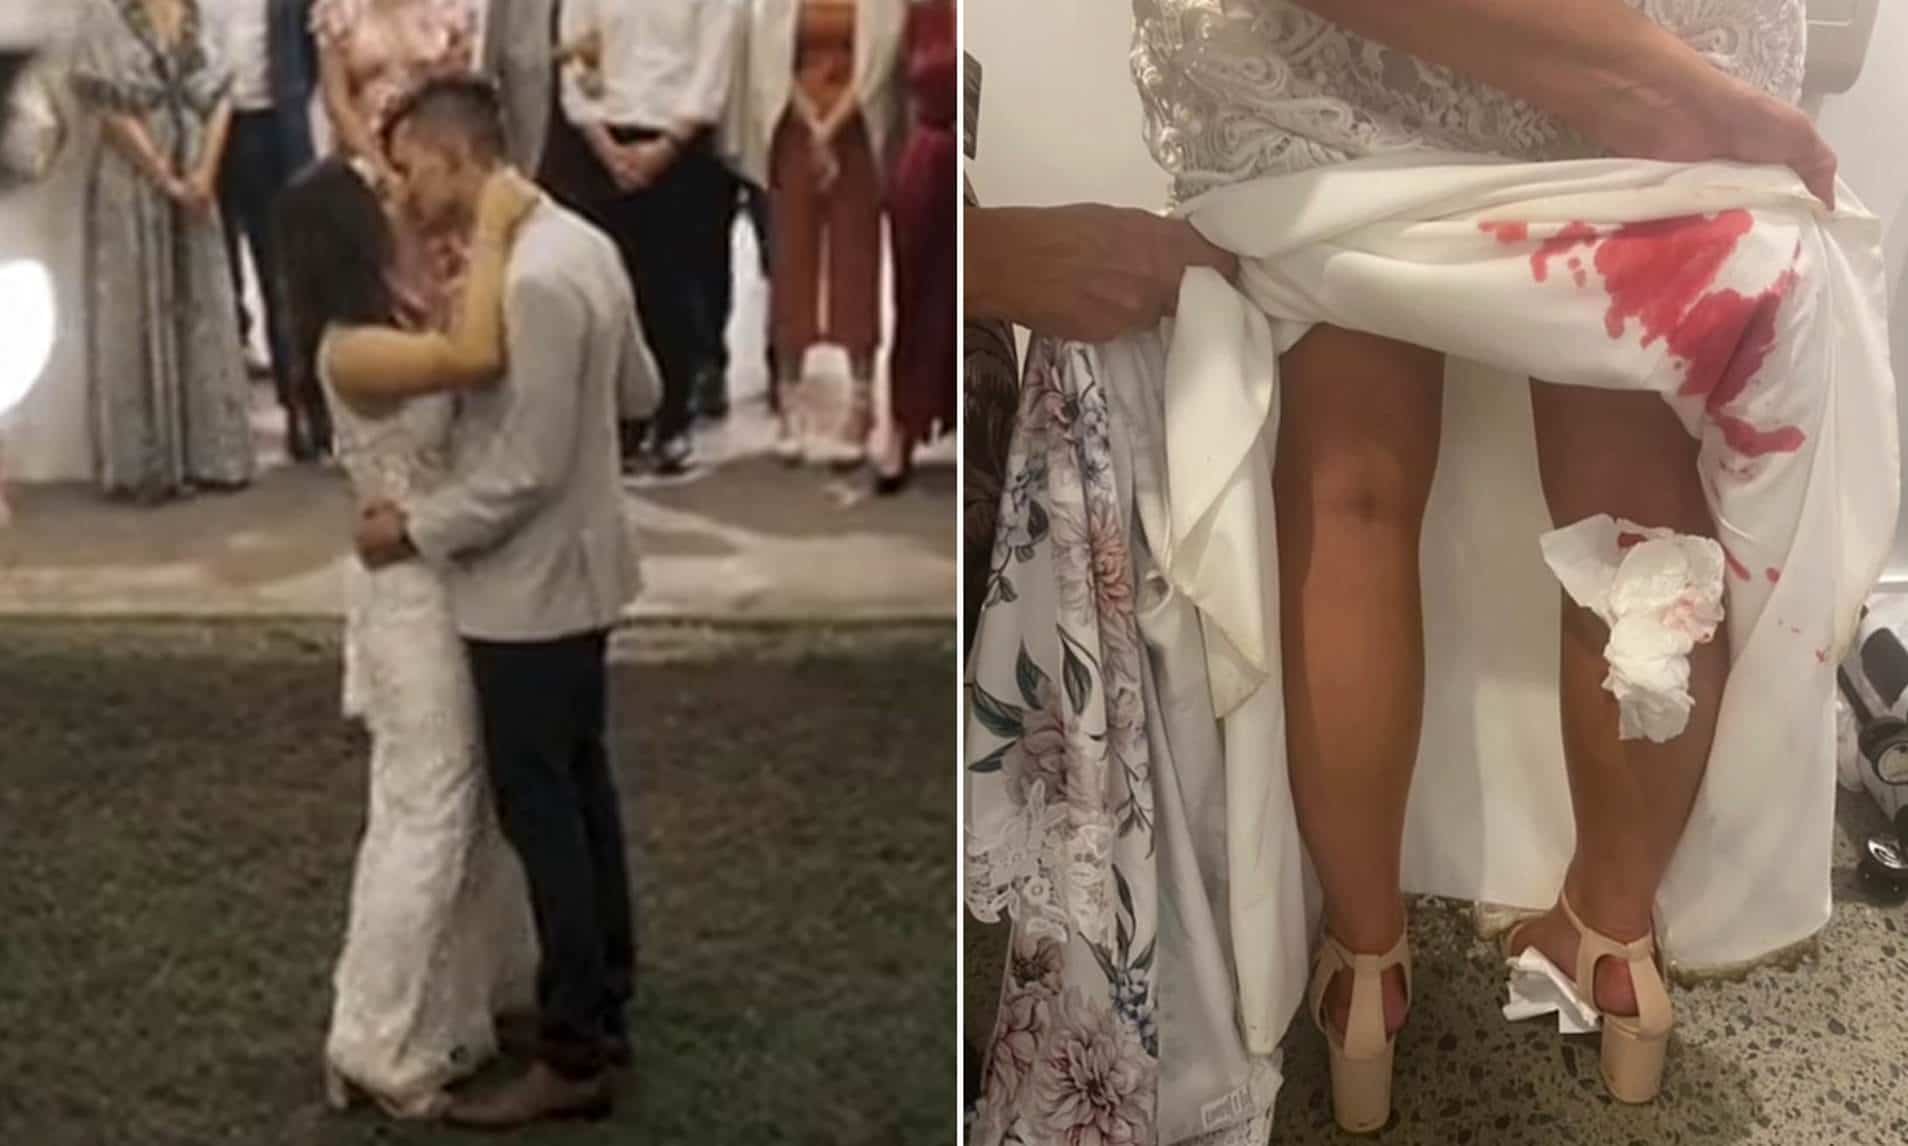 عروس في حالة صدمة بعد أن اكتشفت شيئا مرعبا تحت فستان زفافها watanserb.com